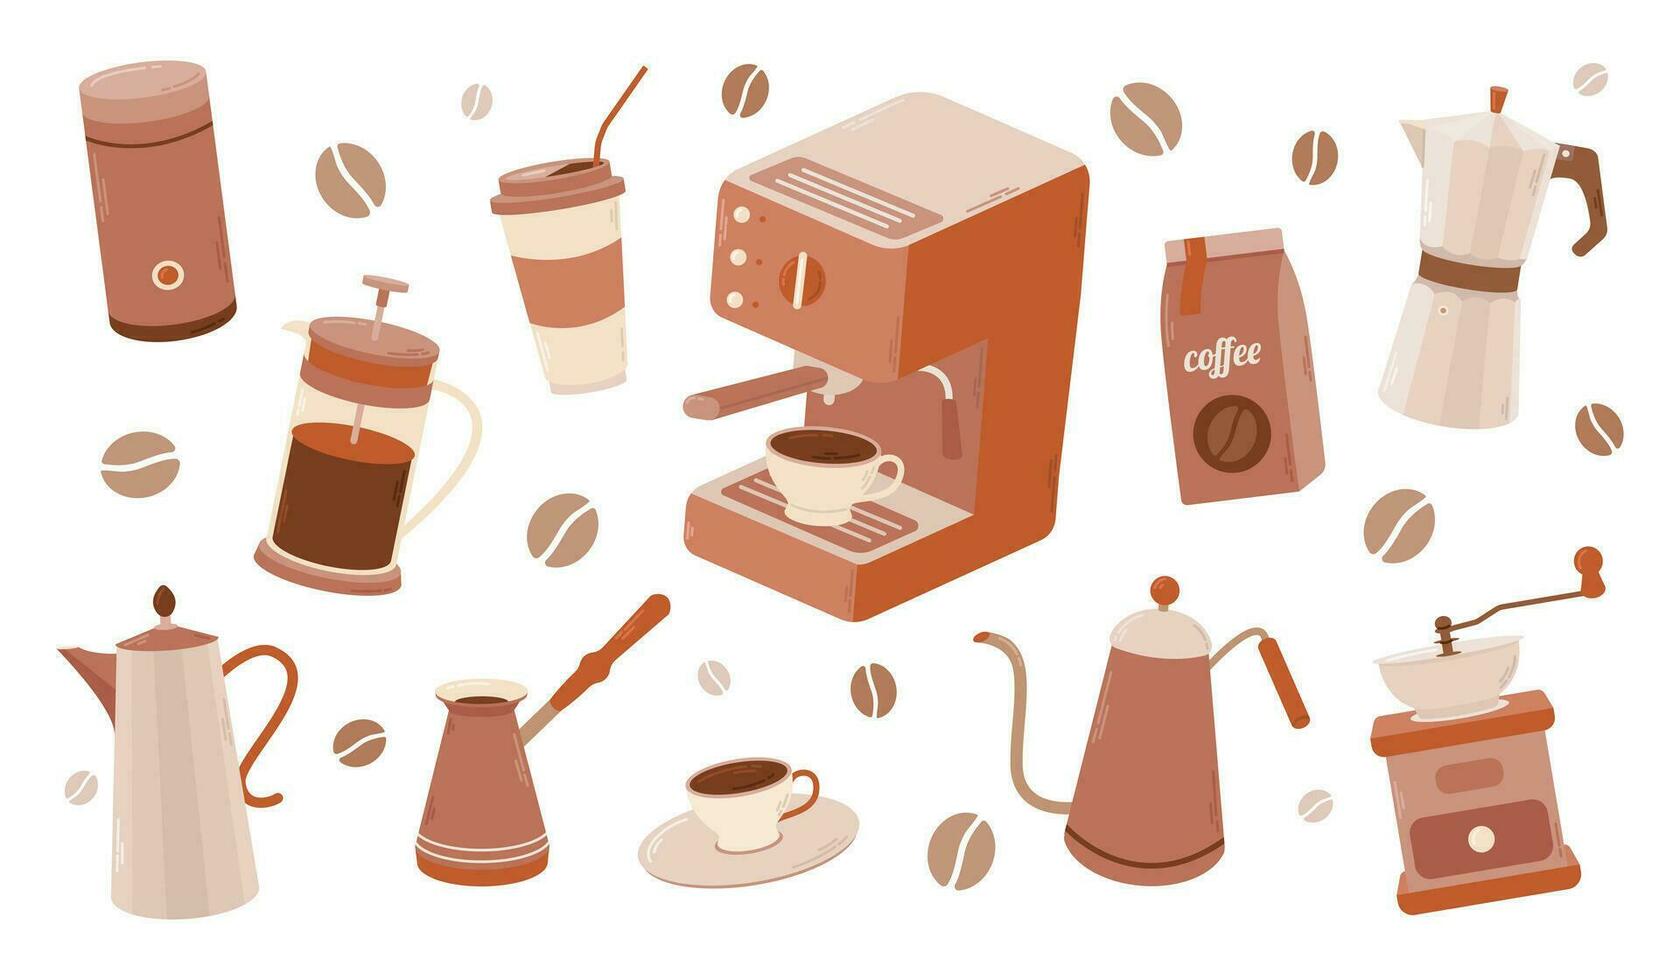 reeks koffie elementen verzameling. koffie benodigdheden pictogrammen. maker, Frans druk op, pot, koffie machine. vector illustratie